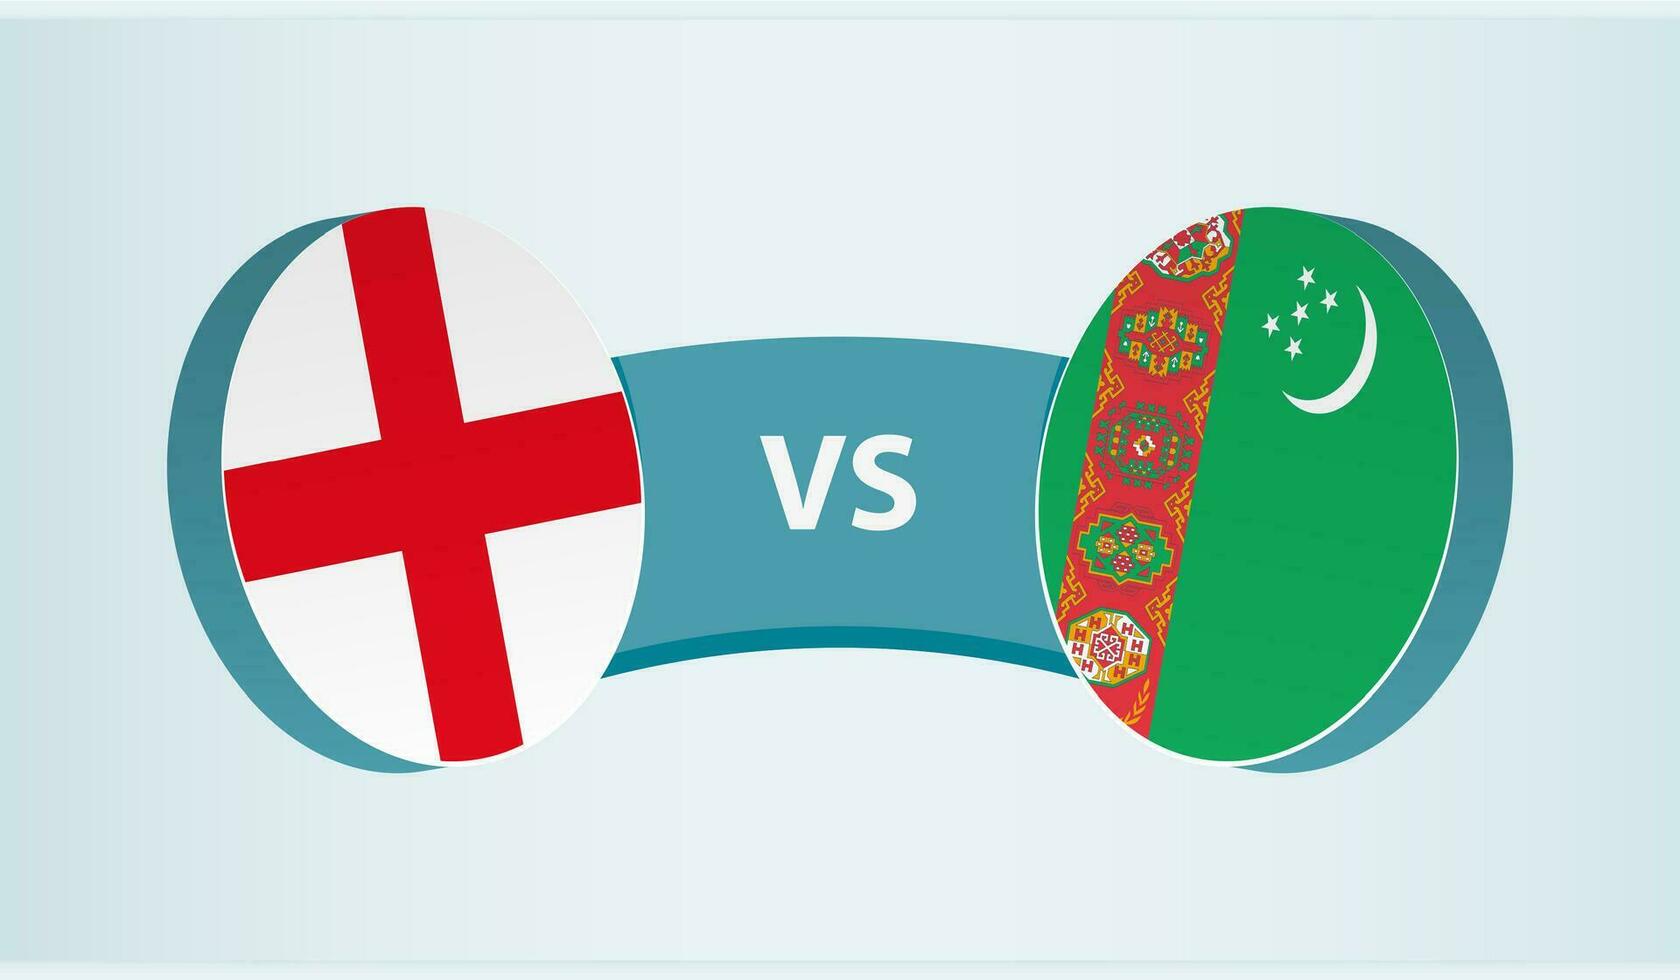 Inglaterra versus turquemenistão, equipe Esportes concorrência conceito. vetor